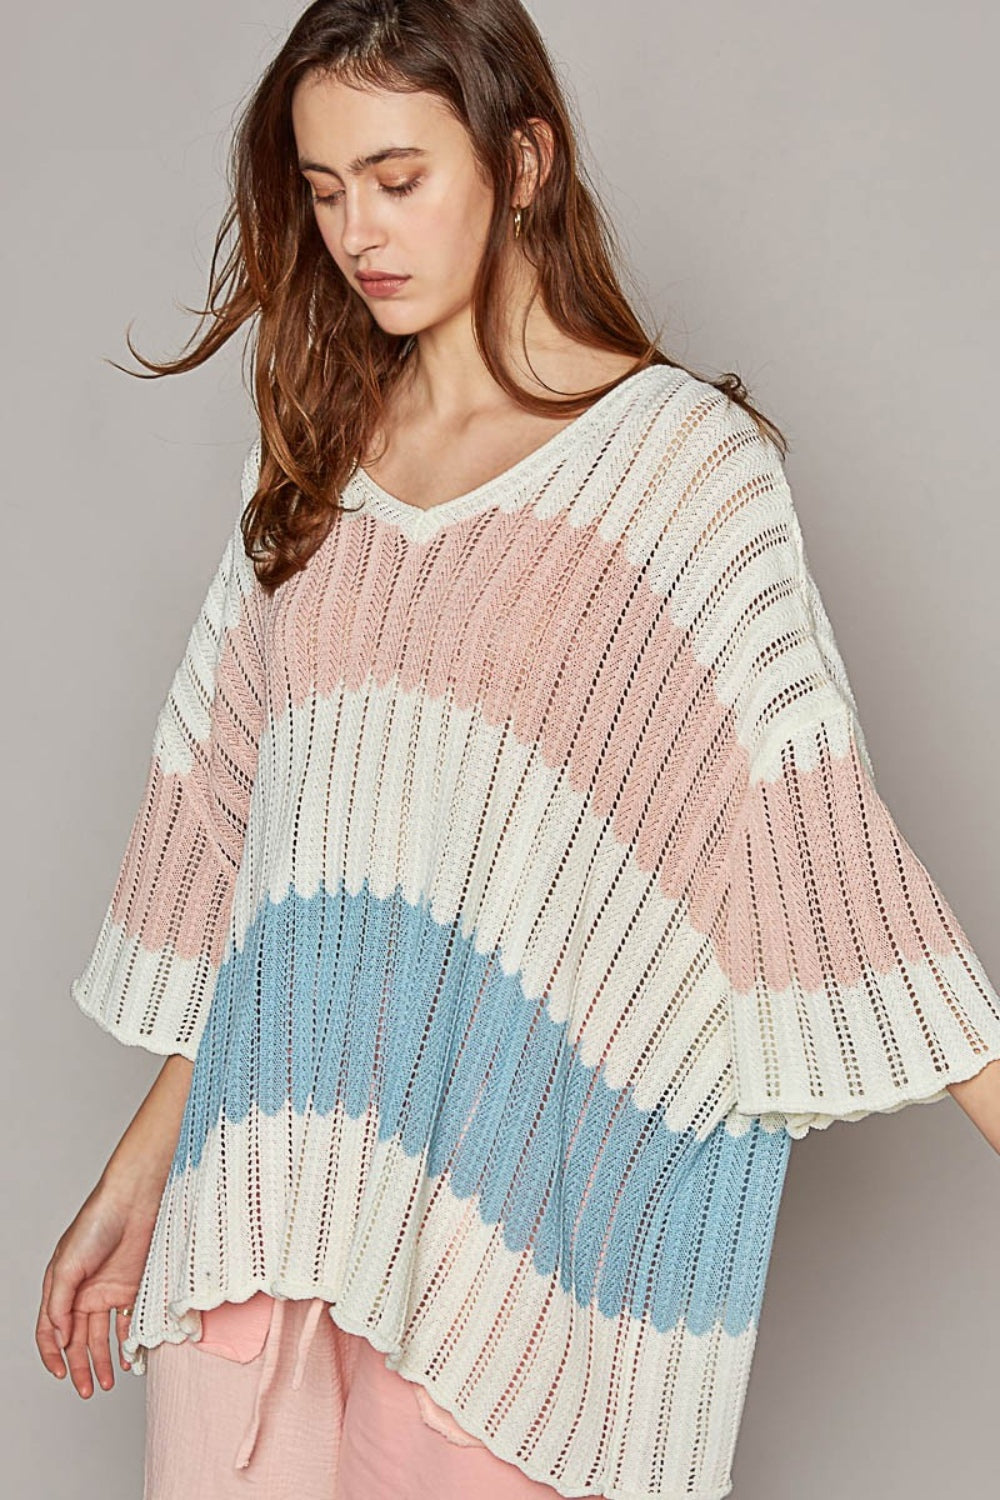 POL V-Neck Short Sleeve Stripe Weave Sweater